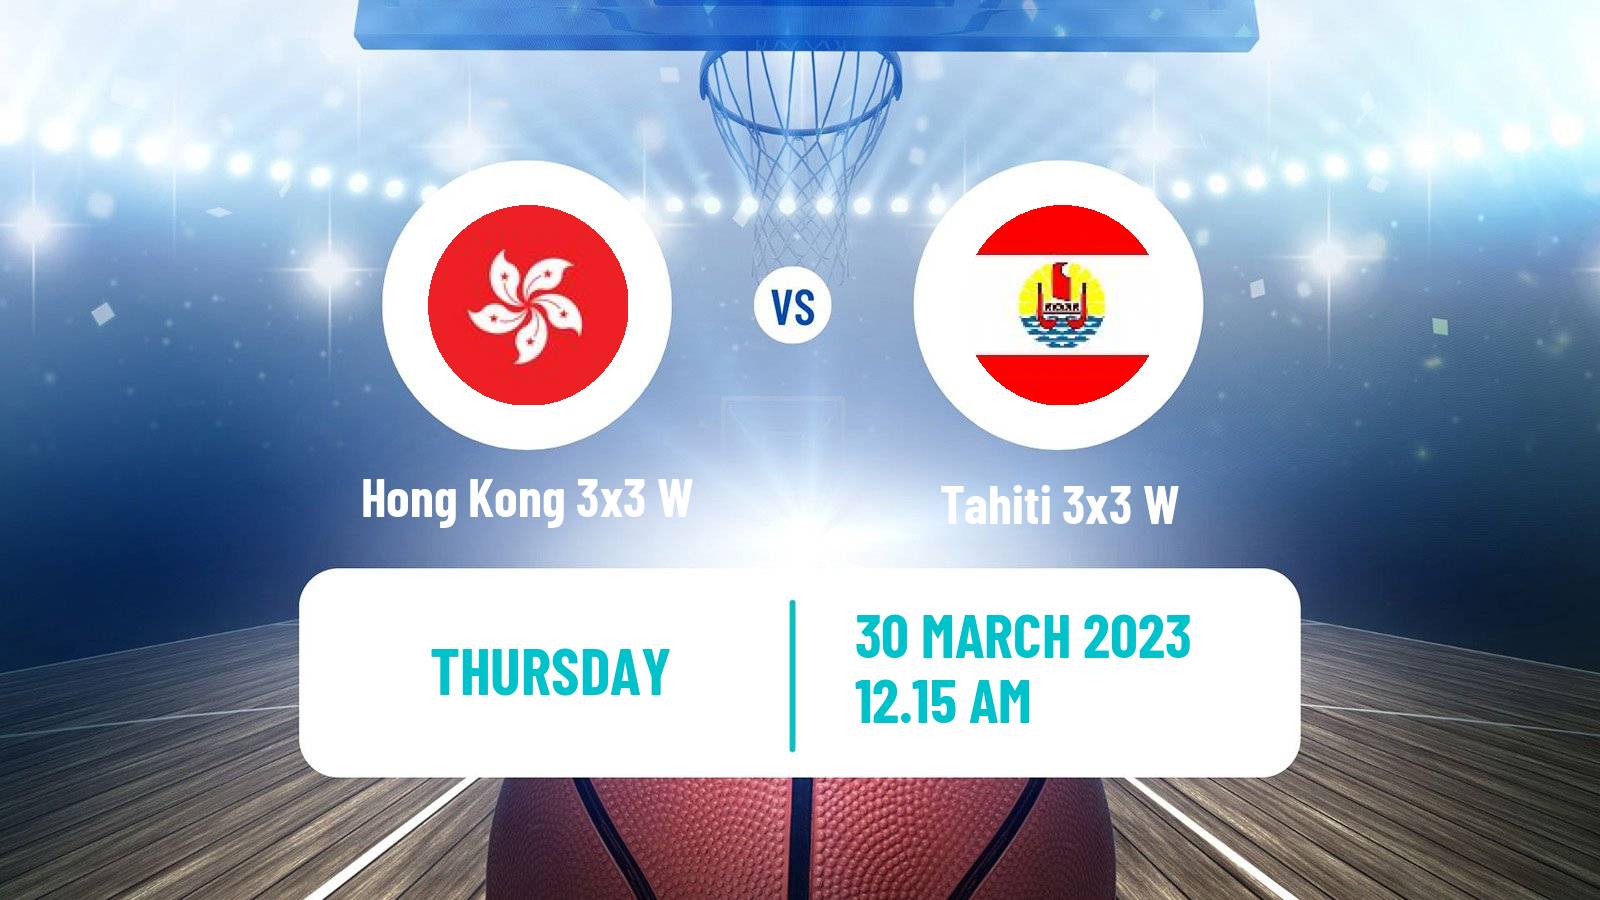 Basketball Asia Cup 3x3 Women Hong Kong 3x3 W - Tahiti 3x3 W